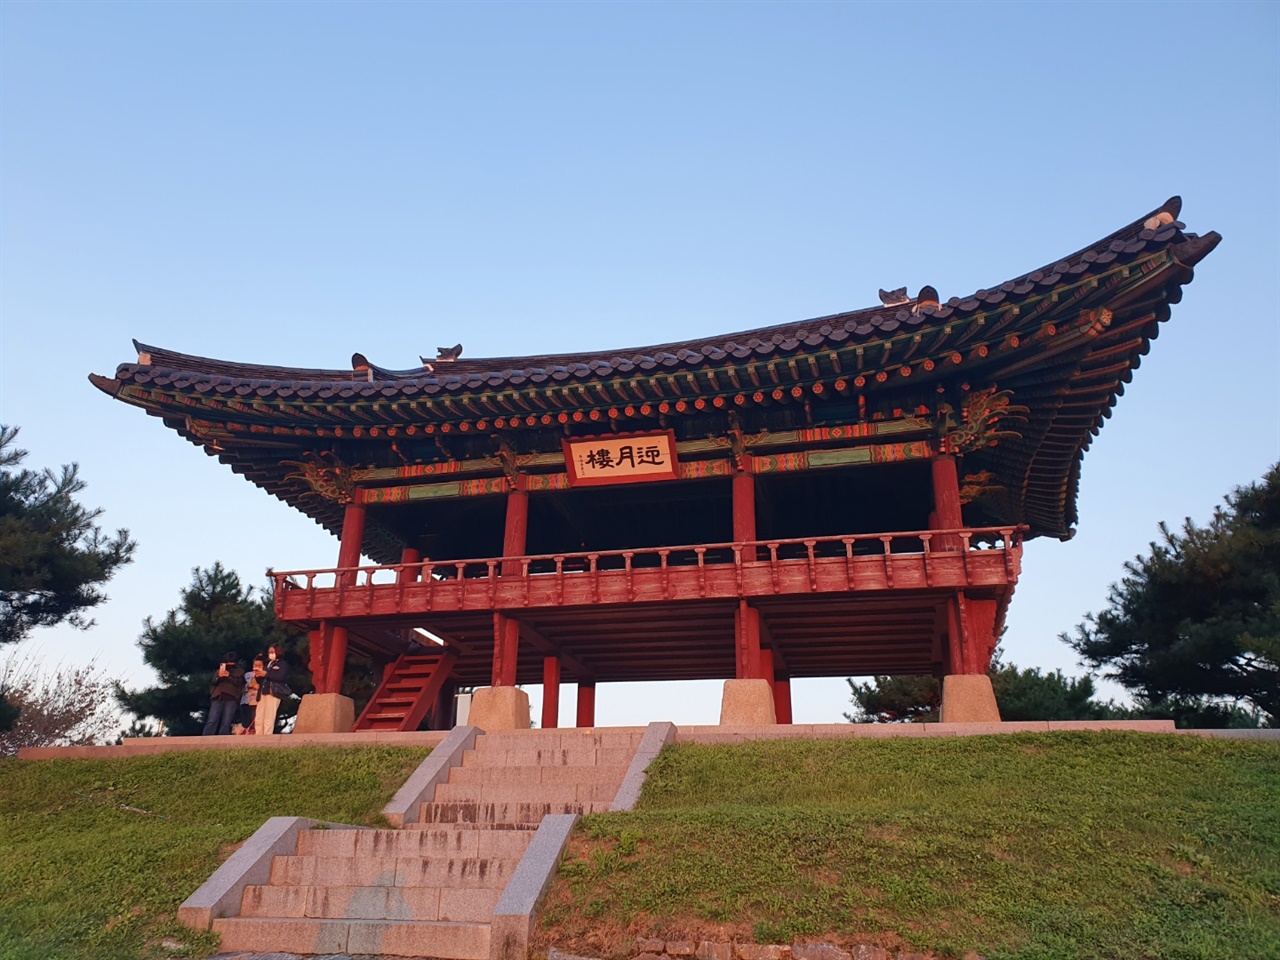 달을 맞이한다는 뜻을 가진 영월루는 본래 관청의 정문으로 쓰였지만 현재 남한강이 잘 내려다 보이는 언덕 위에 자리잡고 있다.